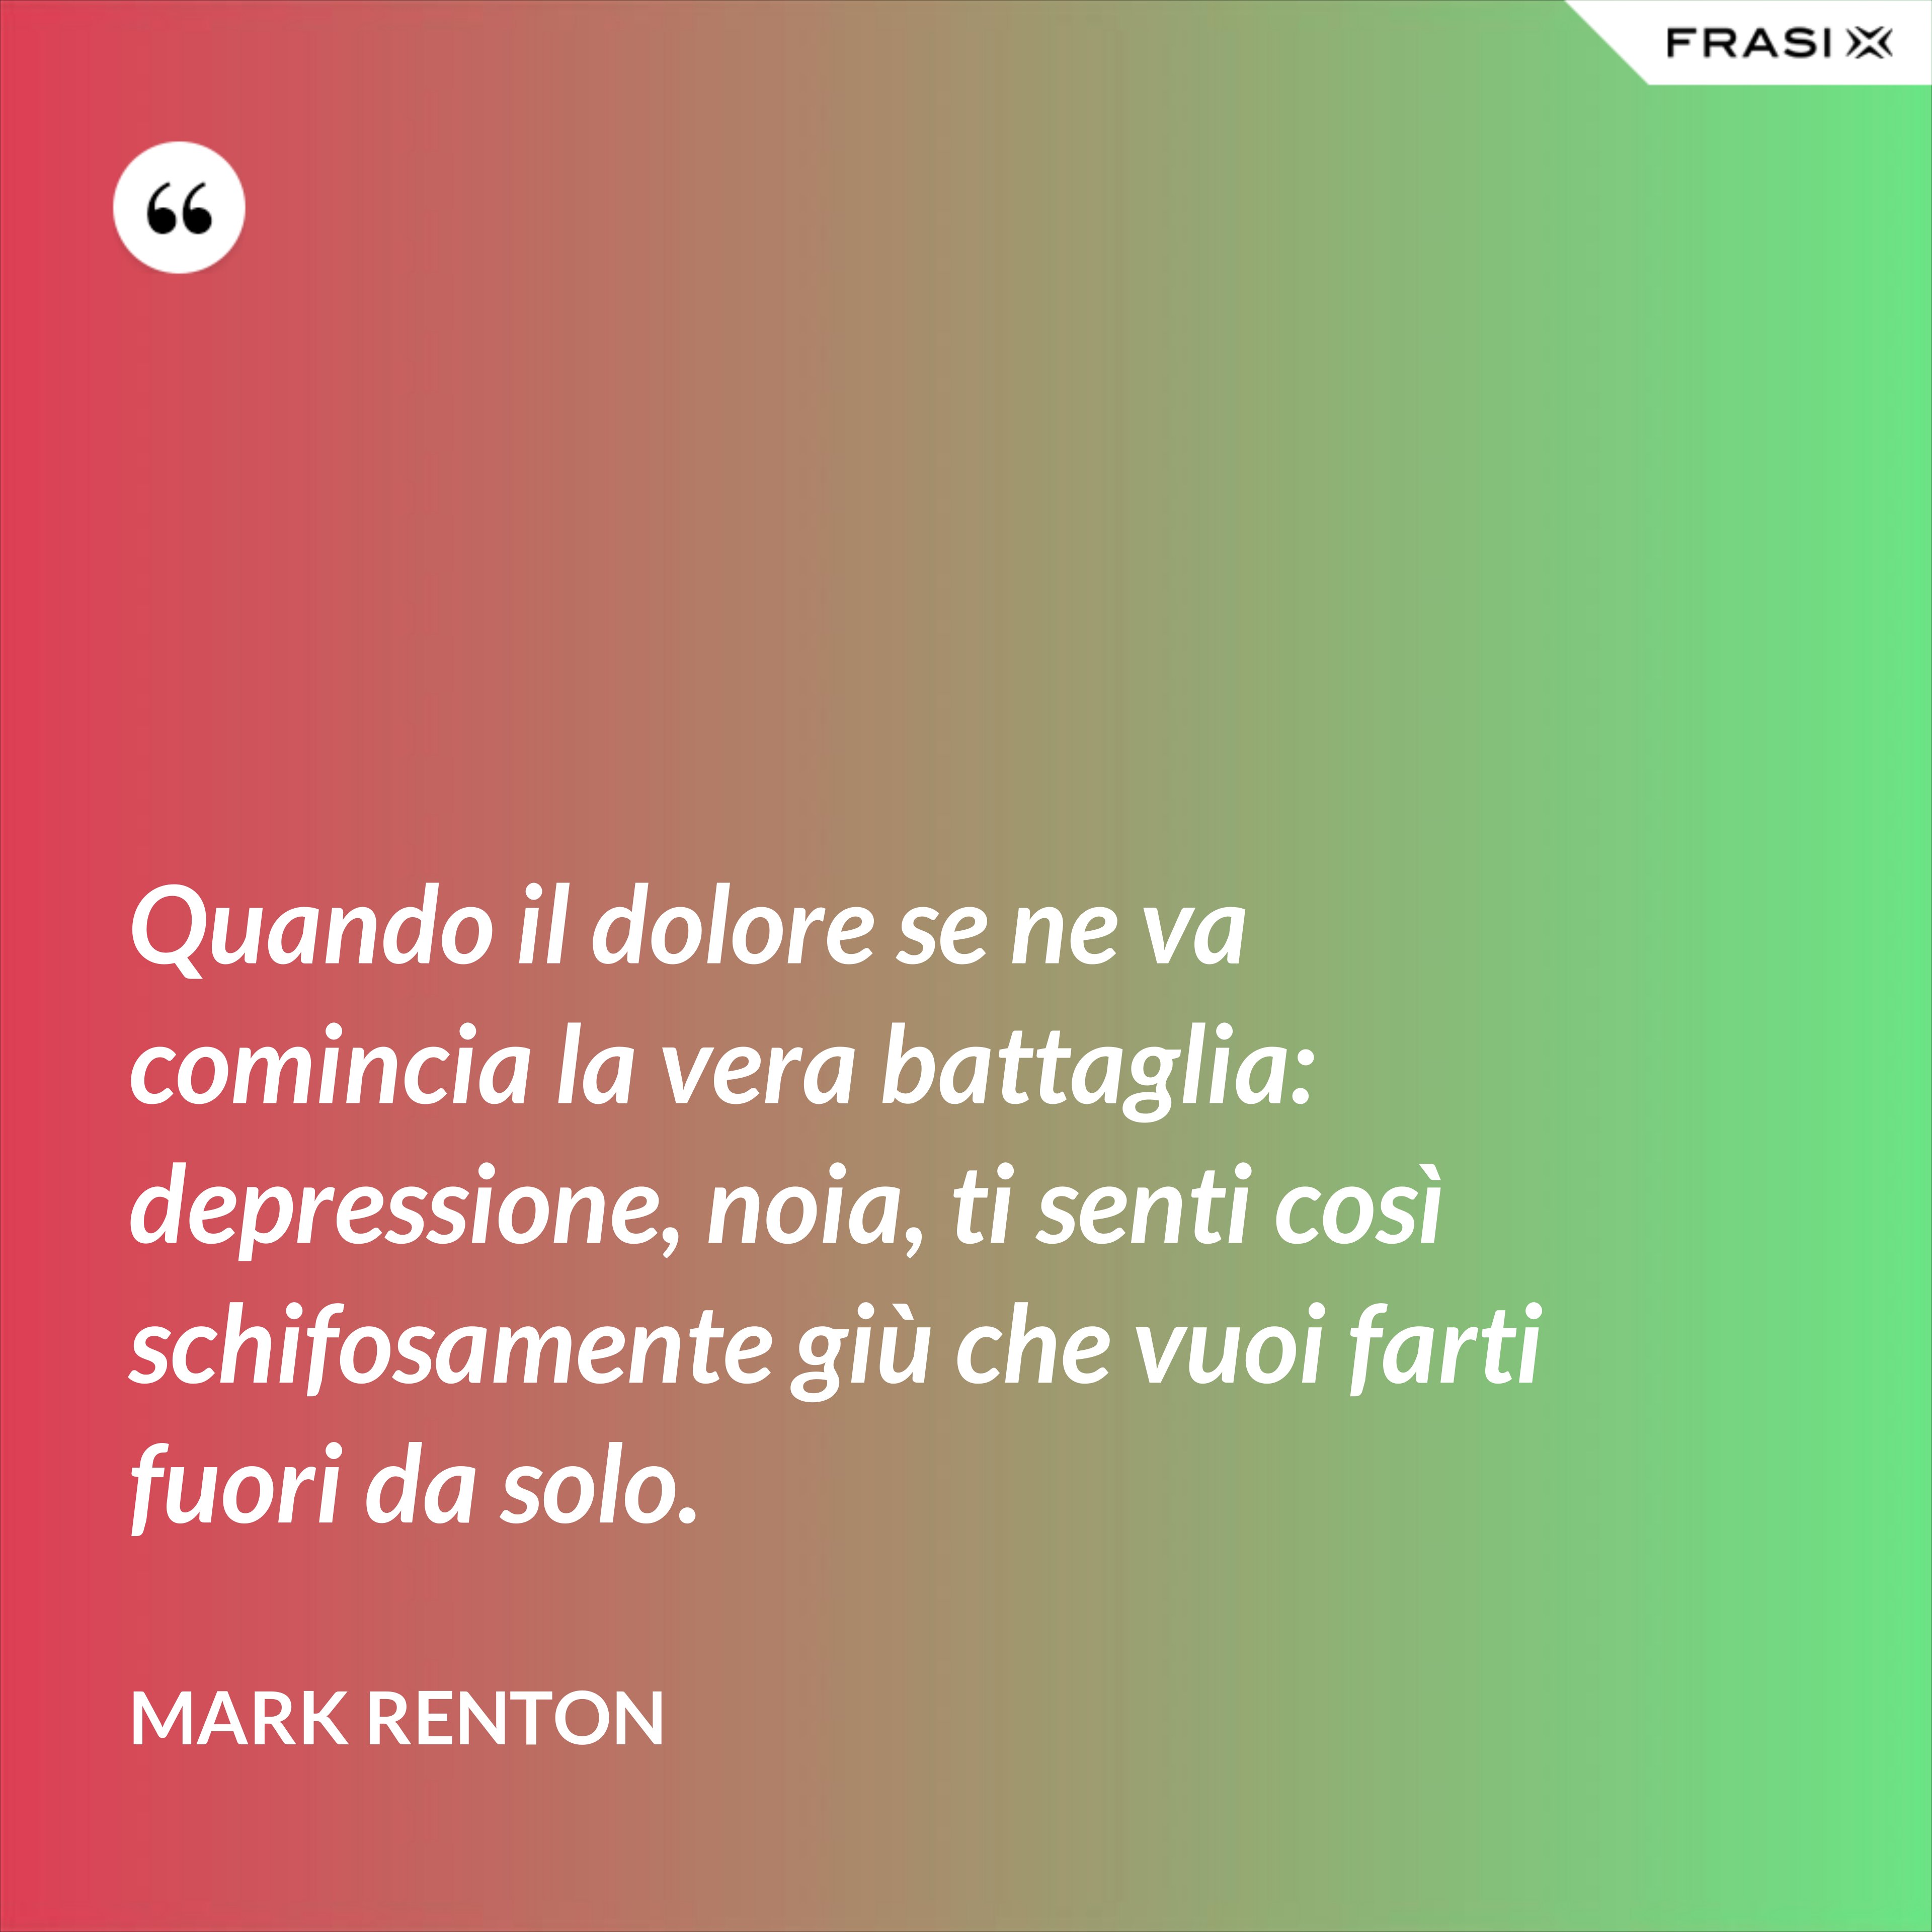 Quando il dolore se ne va comincia la vera battaglia: depressione, noia, ti senti così schifosamente giù che vuoi farti fuori da solo. - Mark Renton